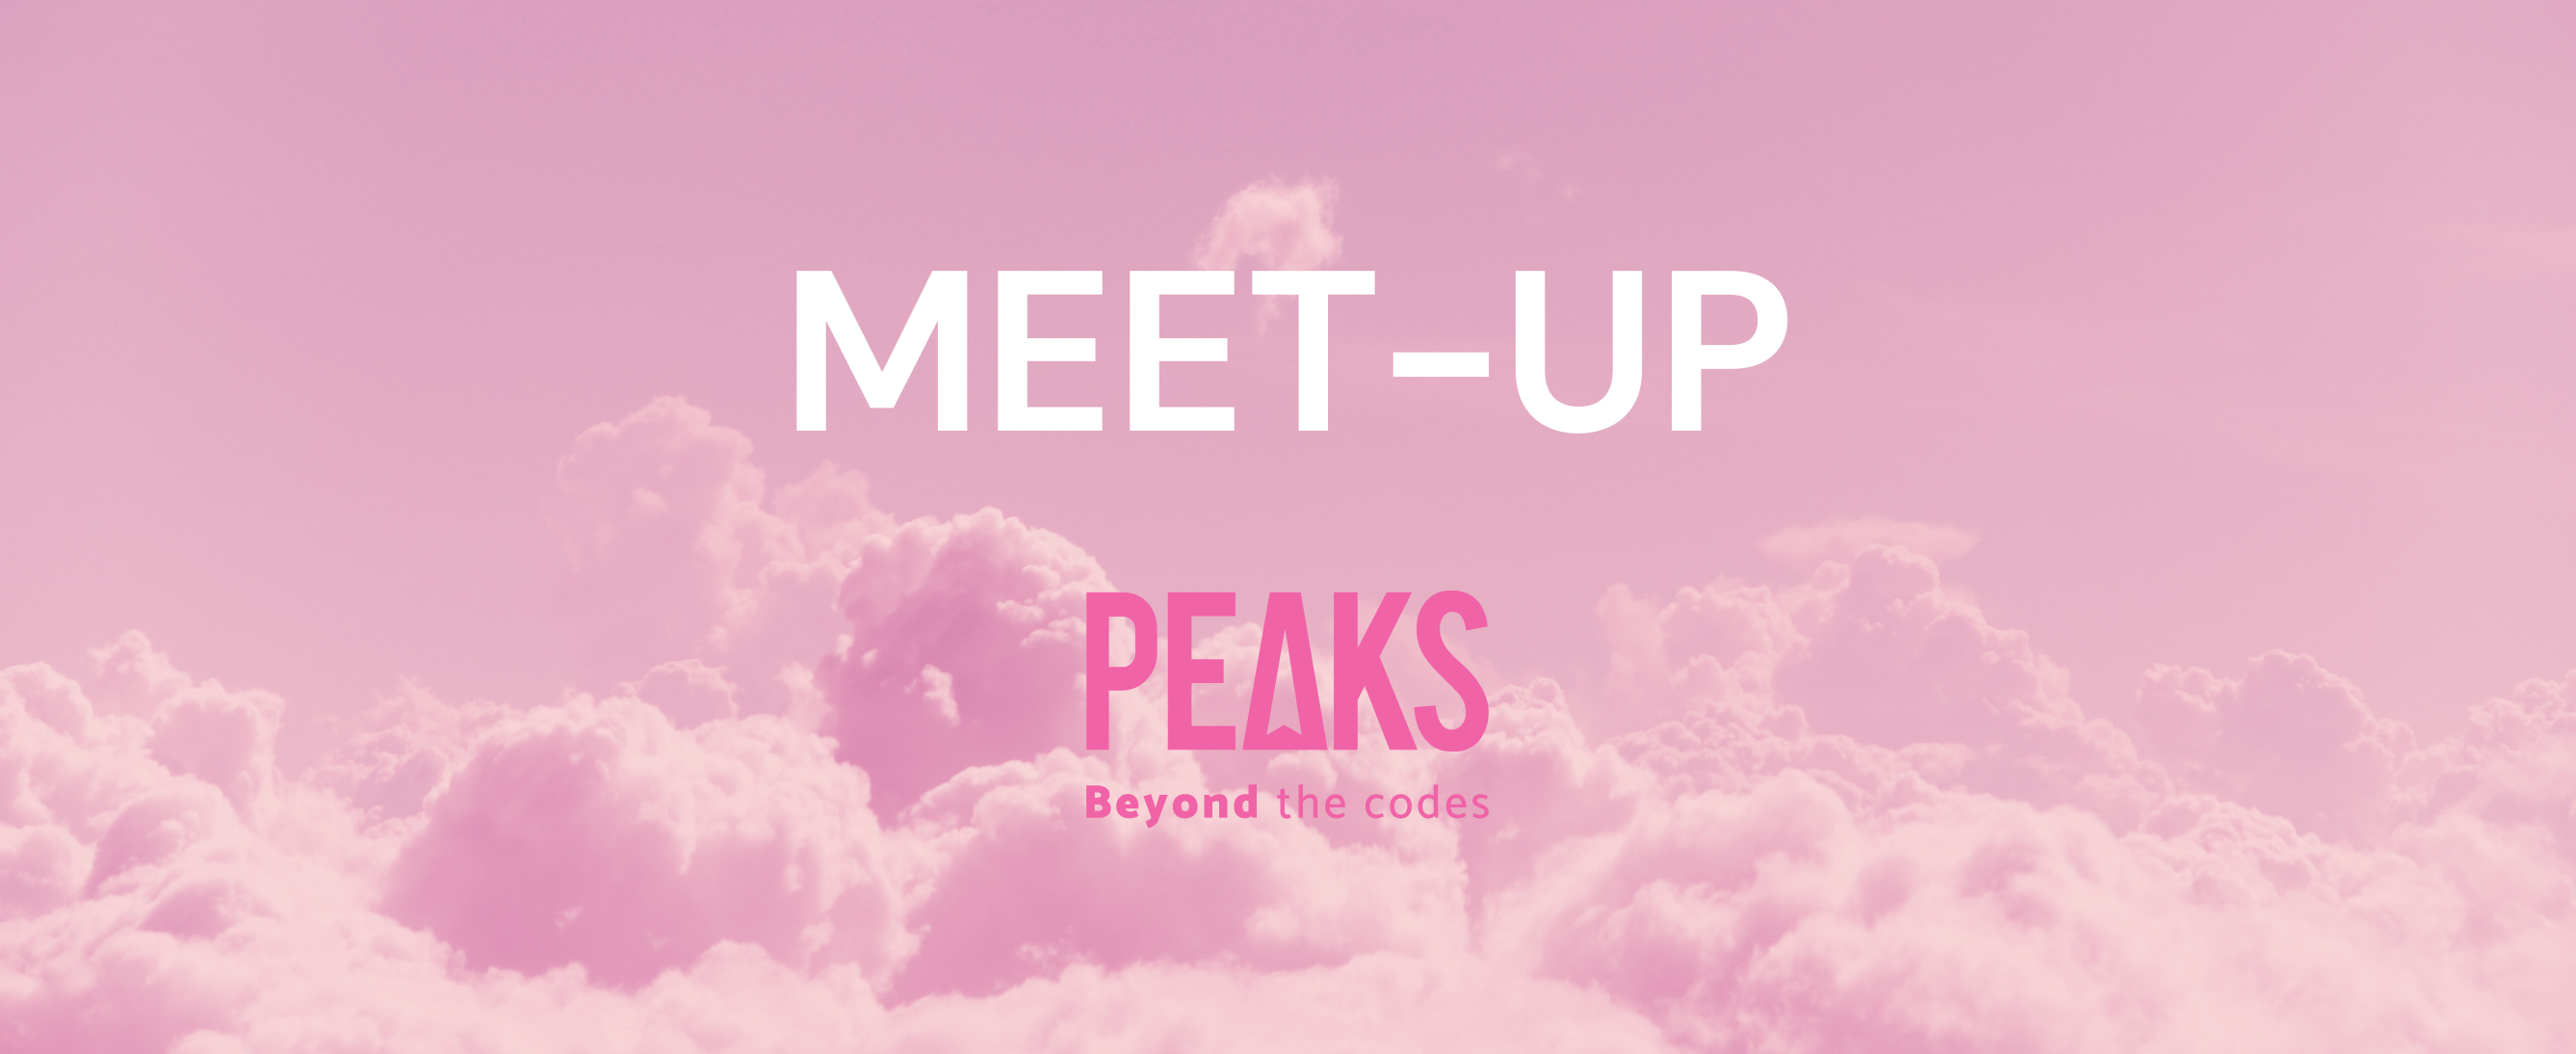 Meet-up Peaks sur la migration de 6play vers le cloud